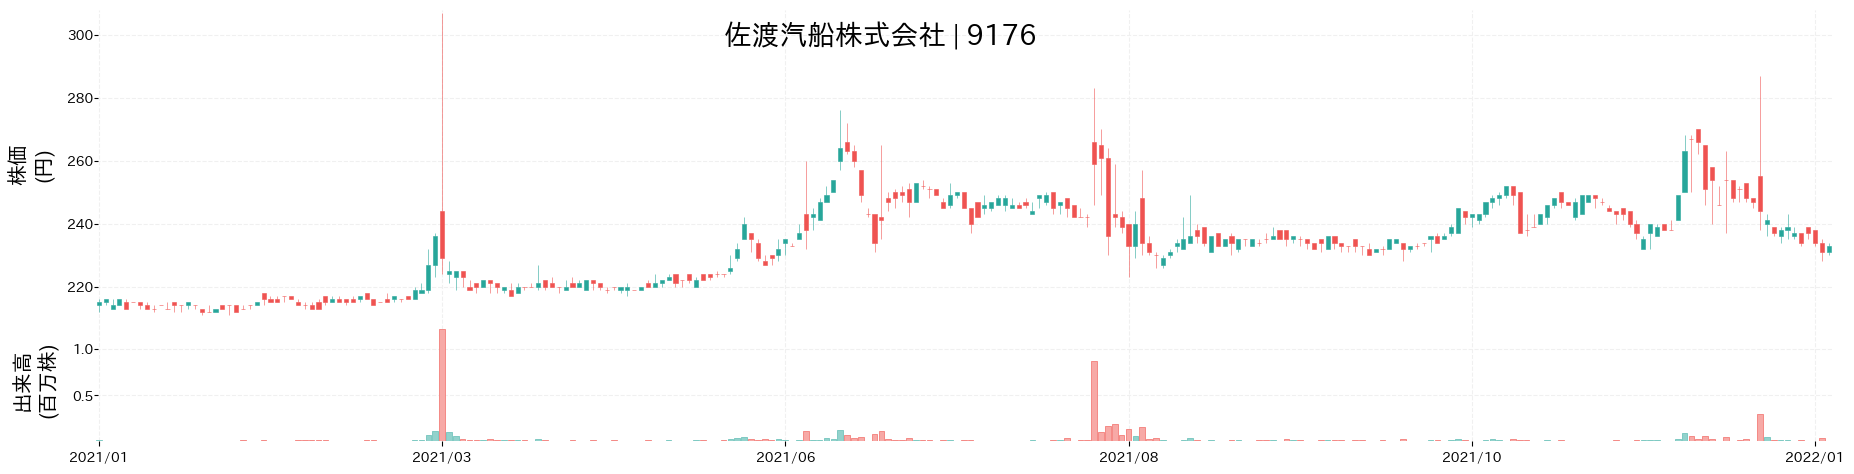 佐渡汽船の株価推移(2021)